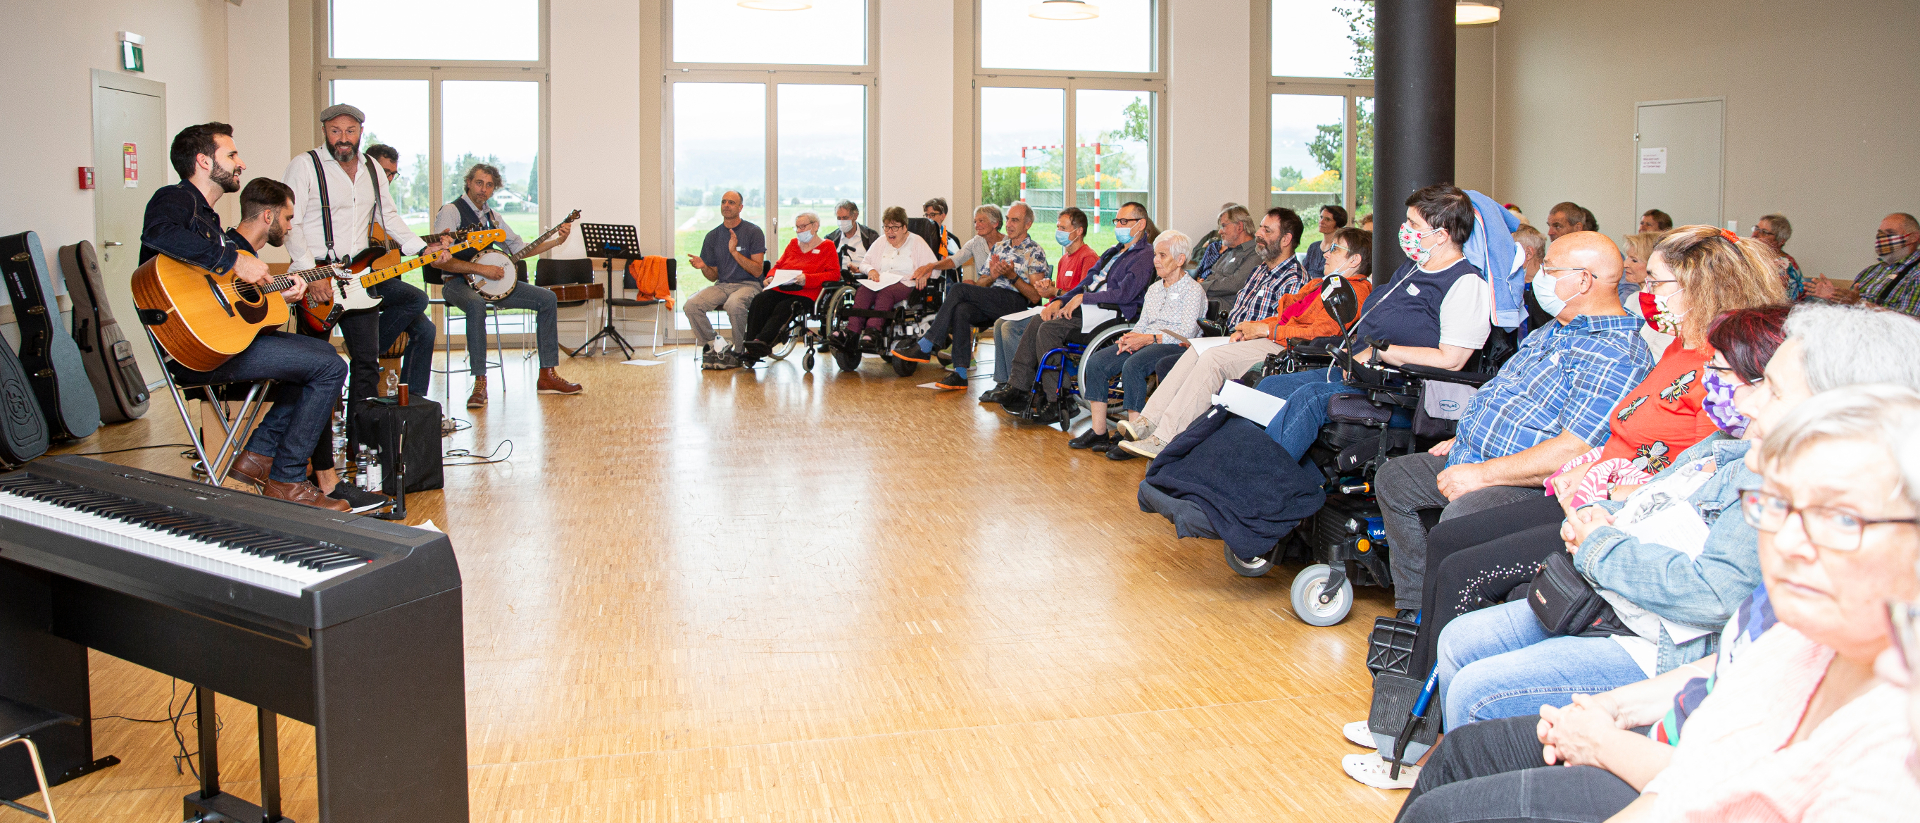 Menschen mit Behinderung und Freiwillige am "Fest des Lebens" im August 2020, organisiert von der Behindertenseelsorge der Katholischen Kirche im Kanton Zürich